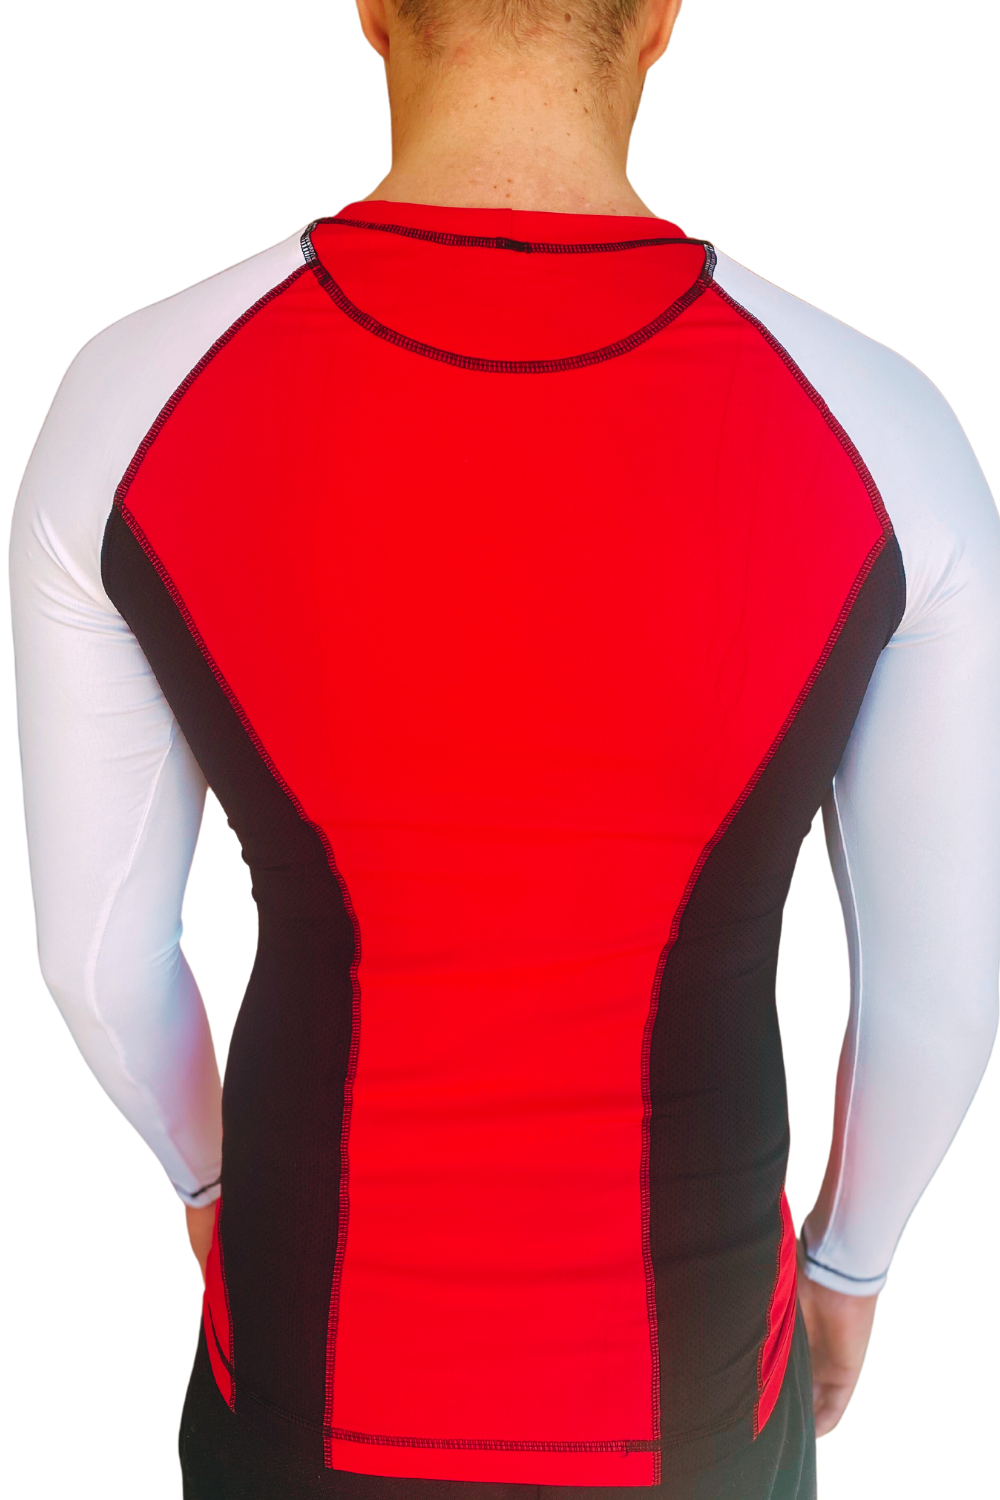 Strong Body MOVE hosszú ujjú edző felső, piros-fehér-fekete, XL